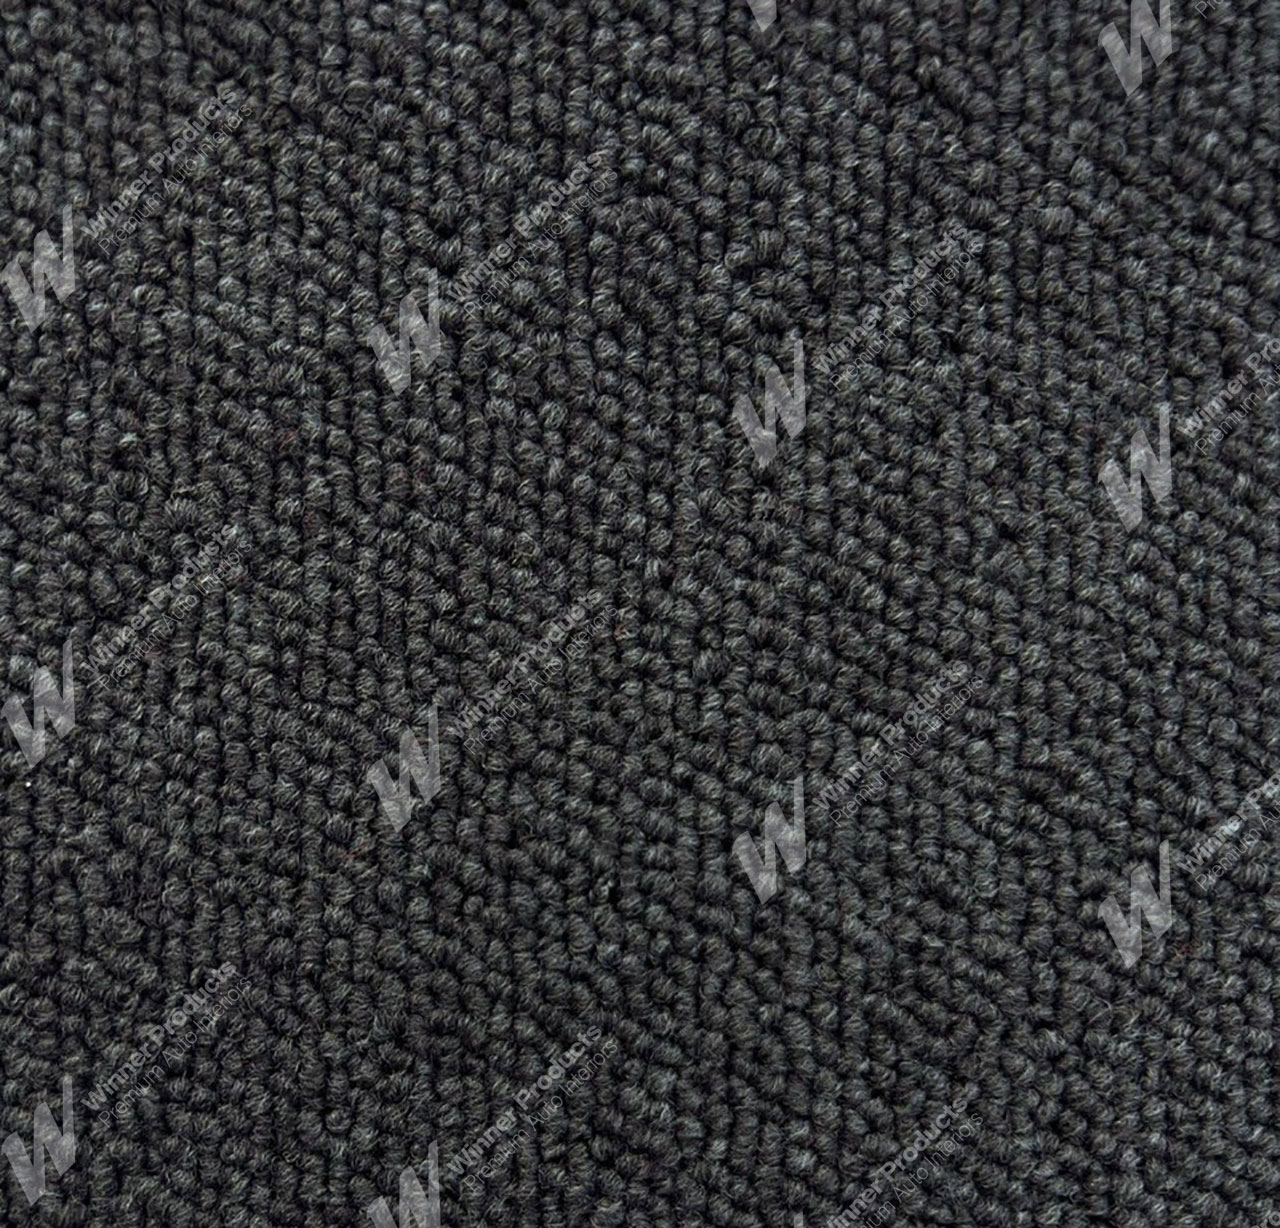 Holden Kingswood HJ Kingswood Sedan 14Y Dove Grey & Cloth Carpet (Image 1 of 1)